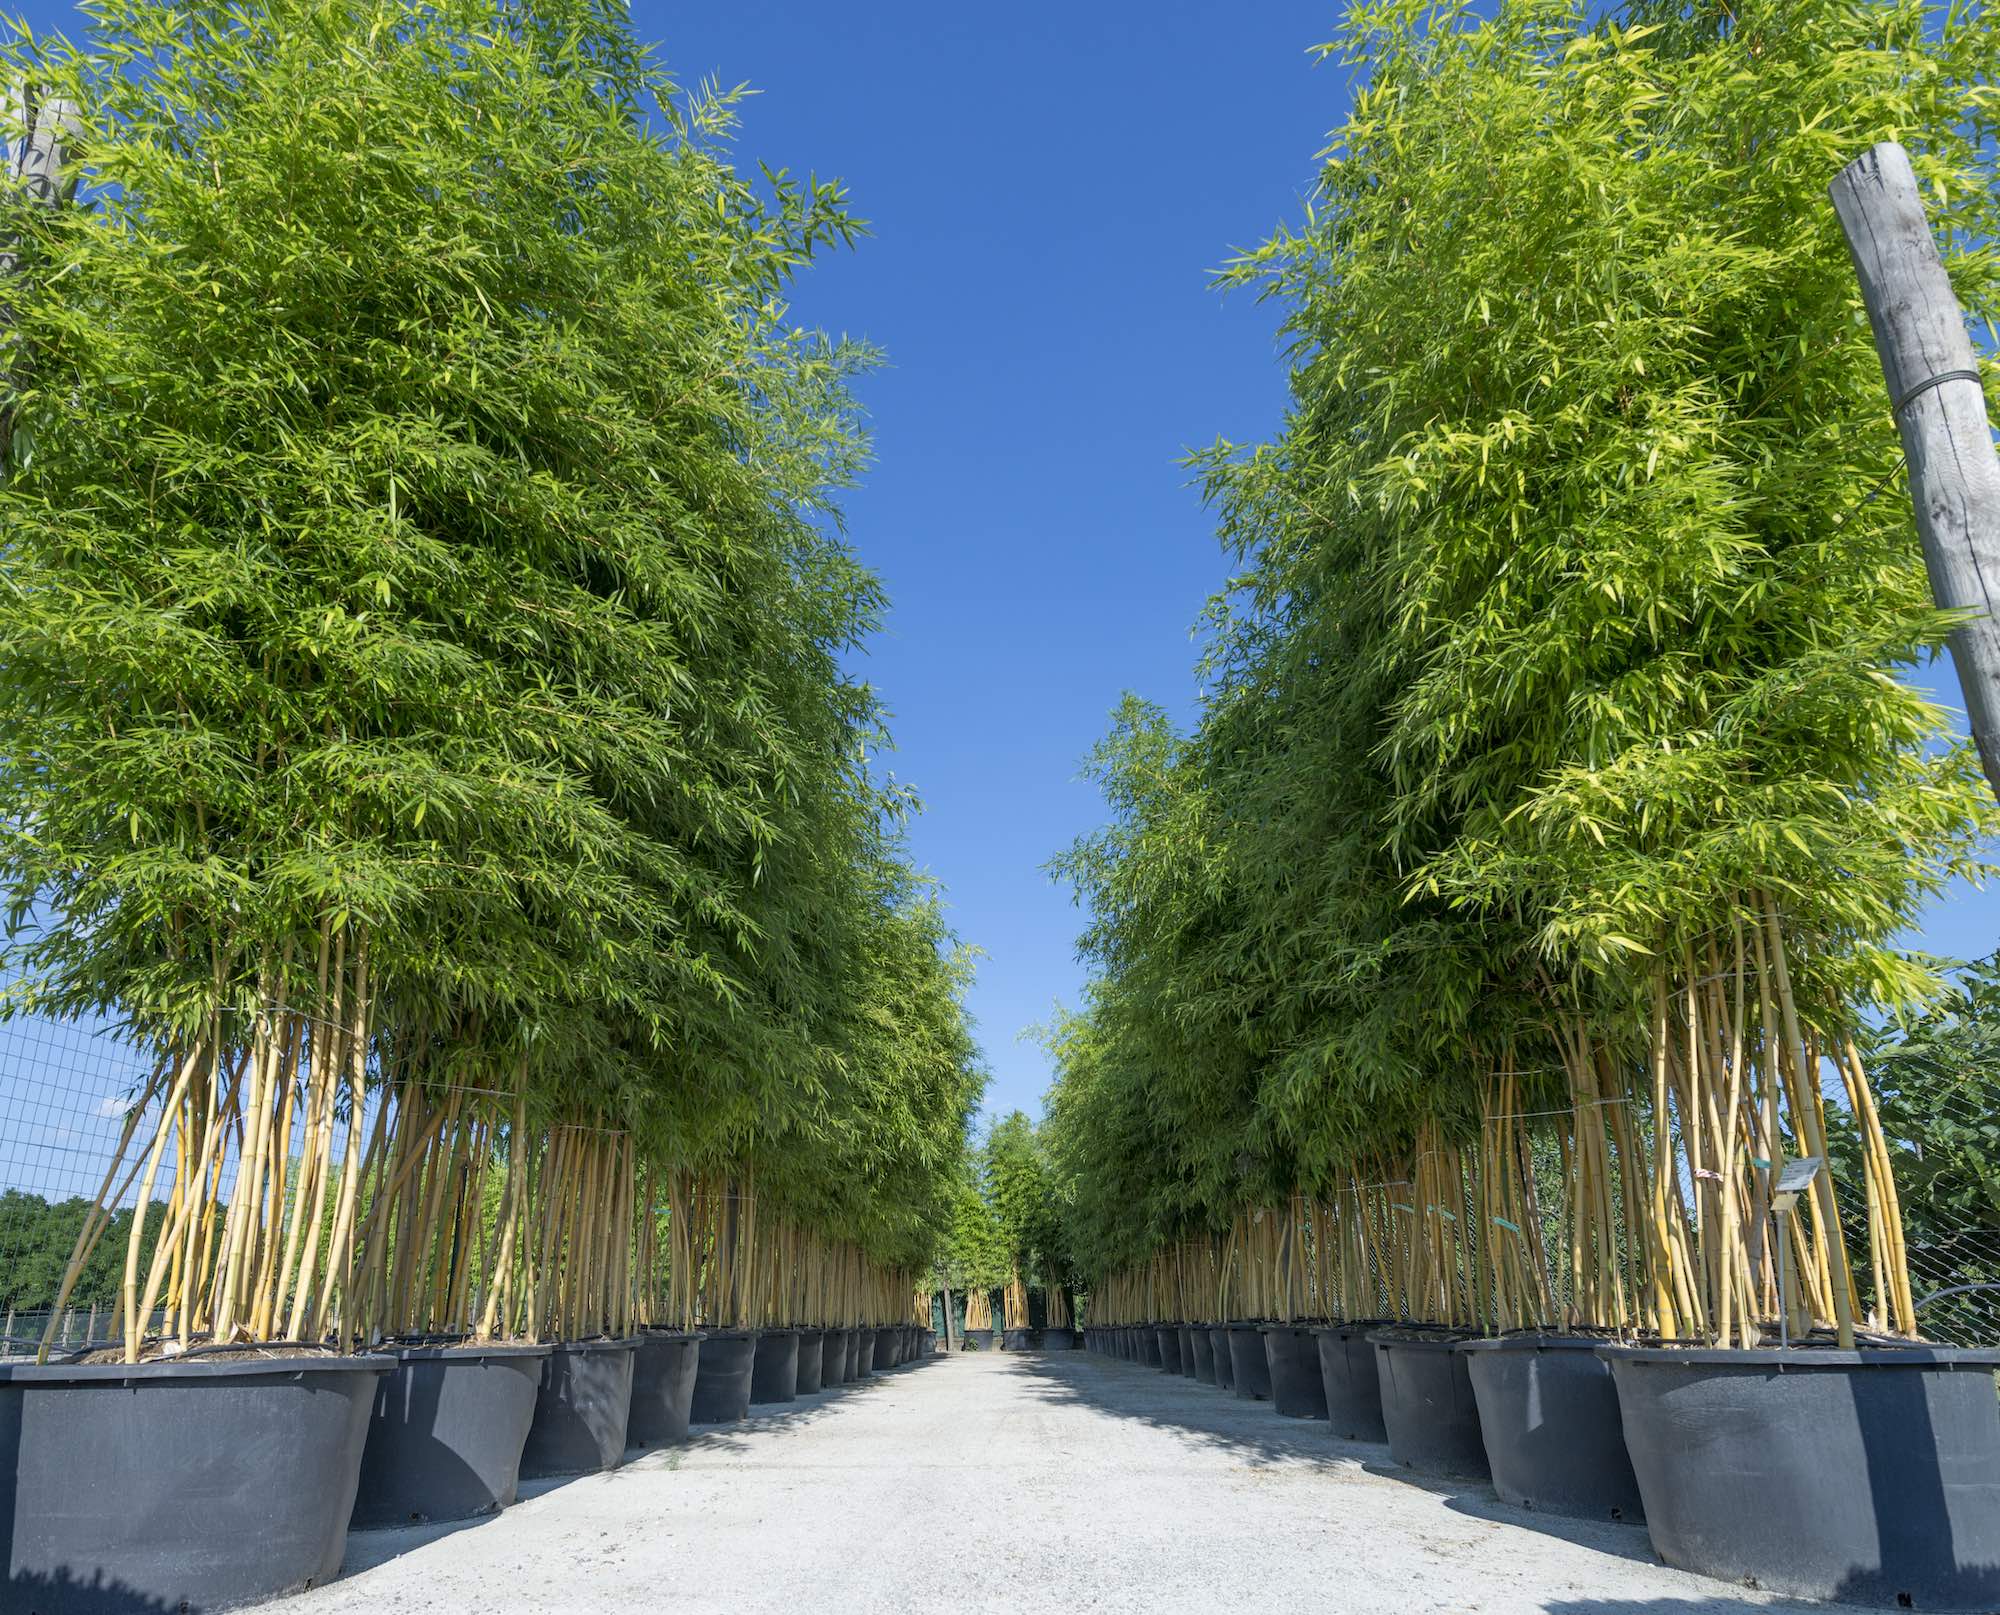 bambu piuvica vannucci piante